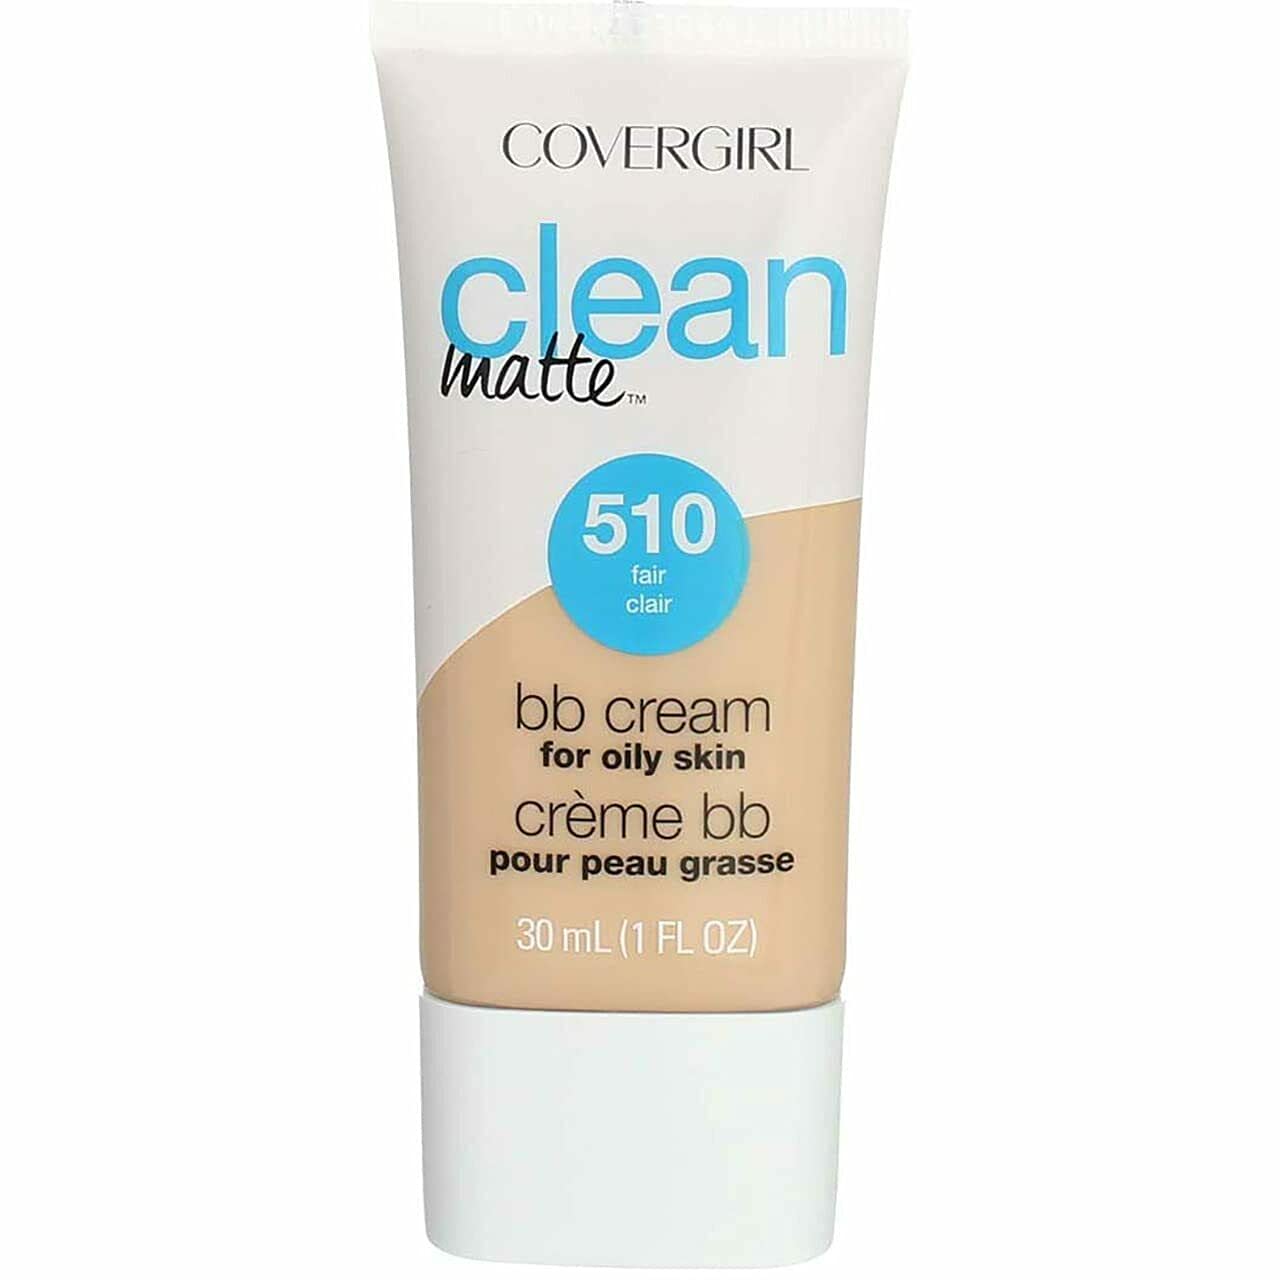 COVERGIRL Clean Matte BB Cream For Oily Skin, Fair 510 - 1 Fl Oz (30 ml)